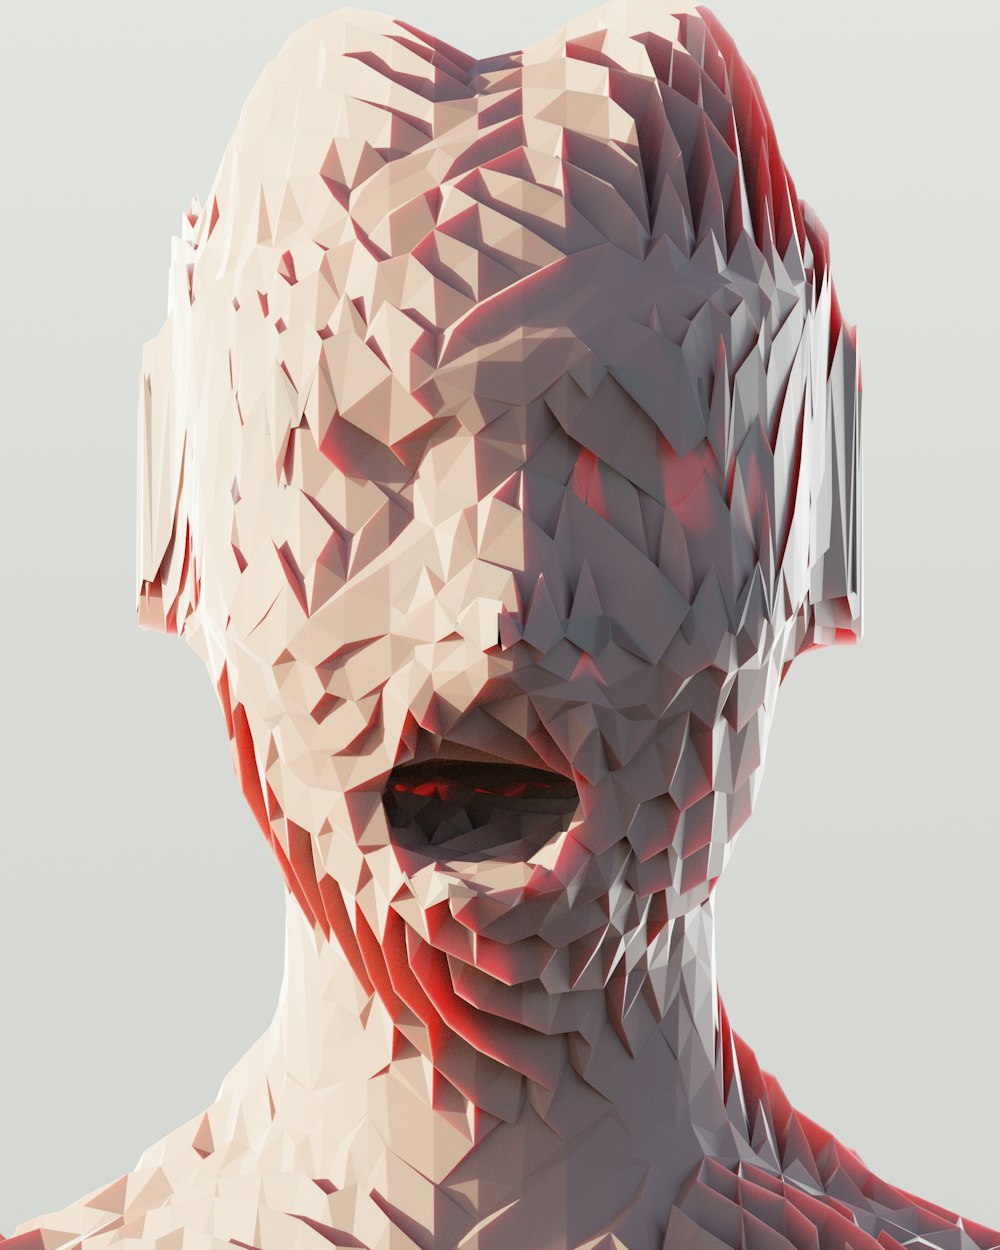 Ein 3D-Bild des Gesichts und des Halses einer Frau